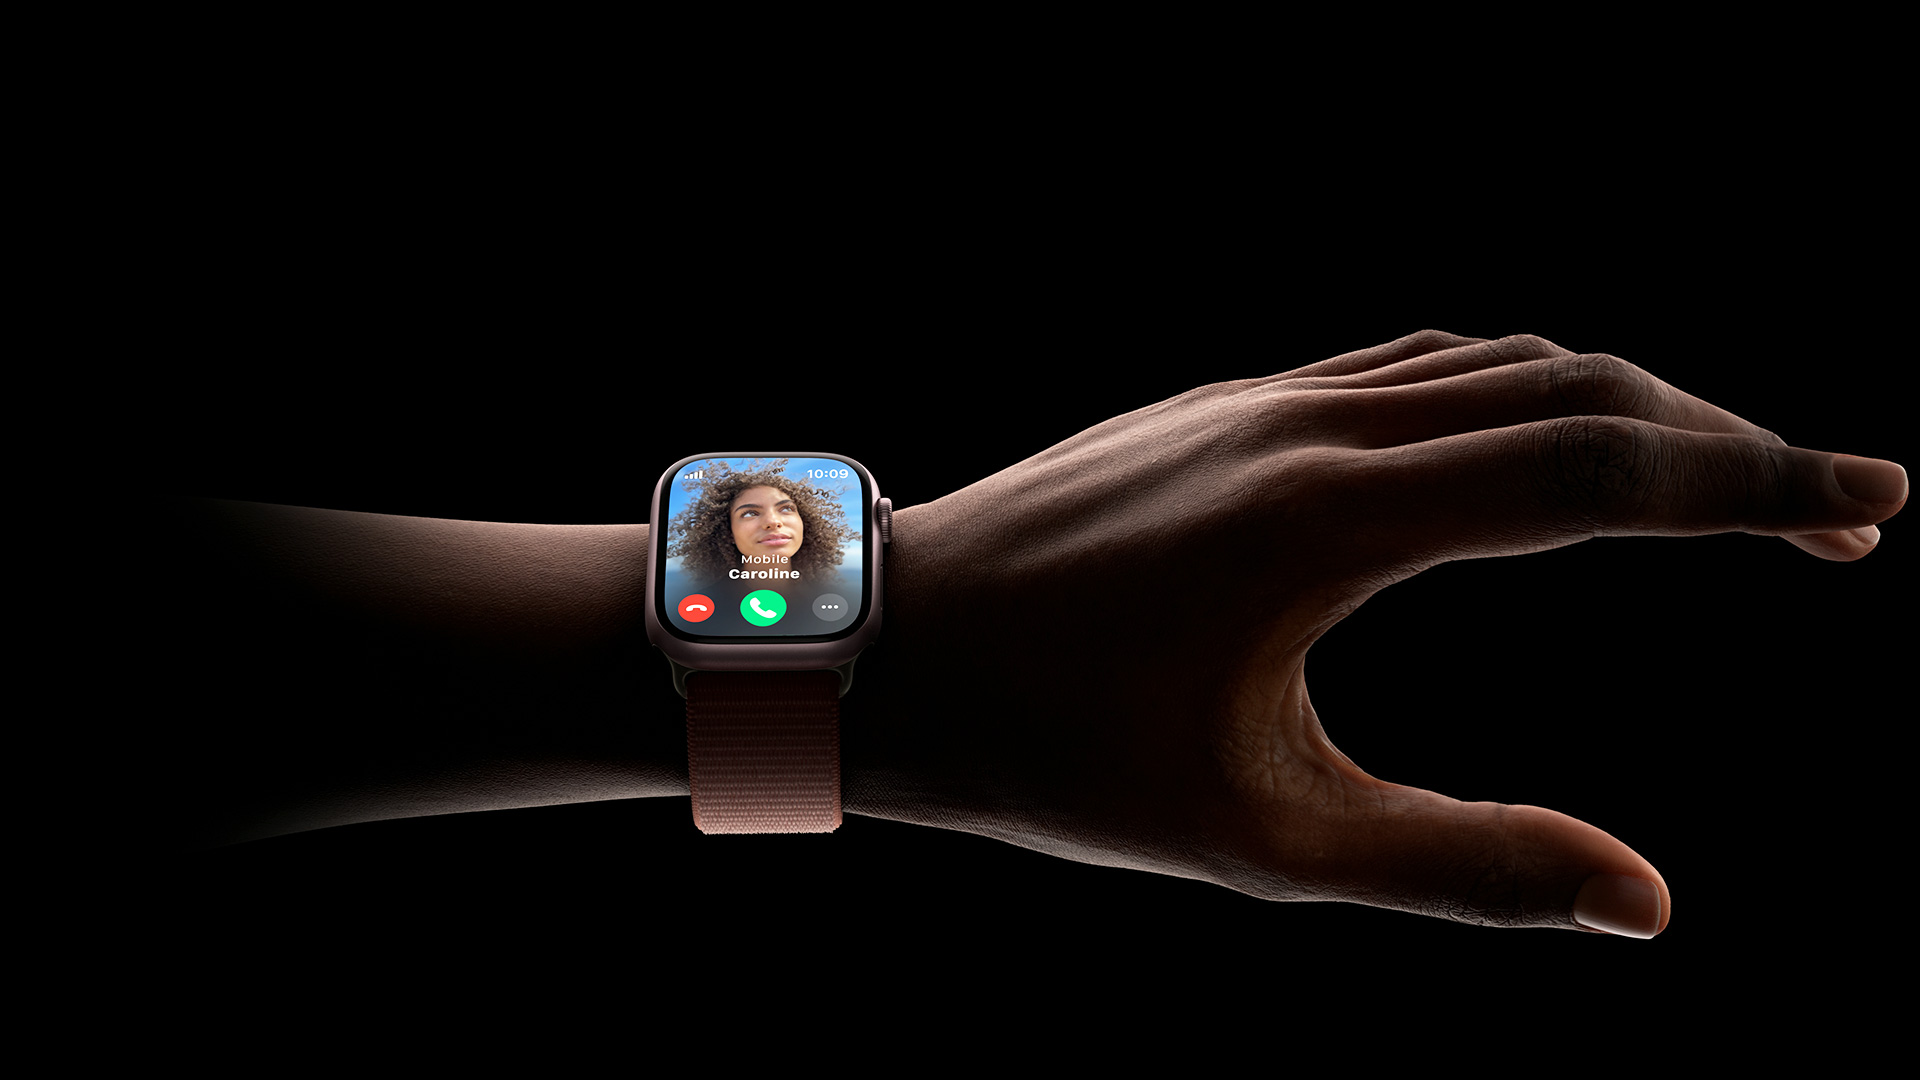 Concept đóng gói Apple Watch: Nhìn được cả mặt lẫn dây mà không cần khui hộp